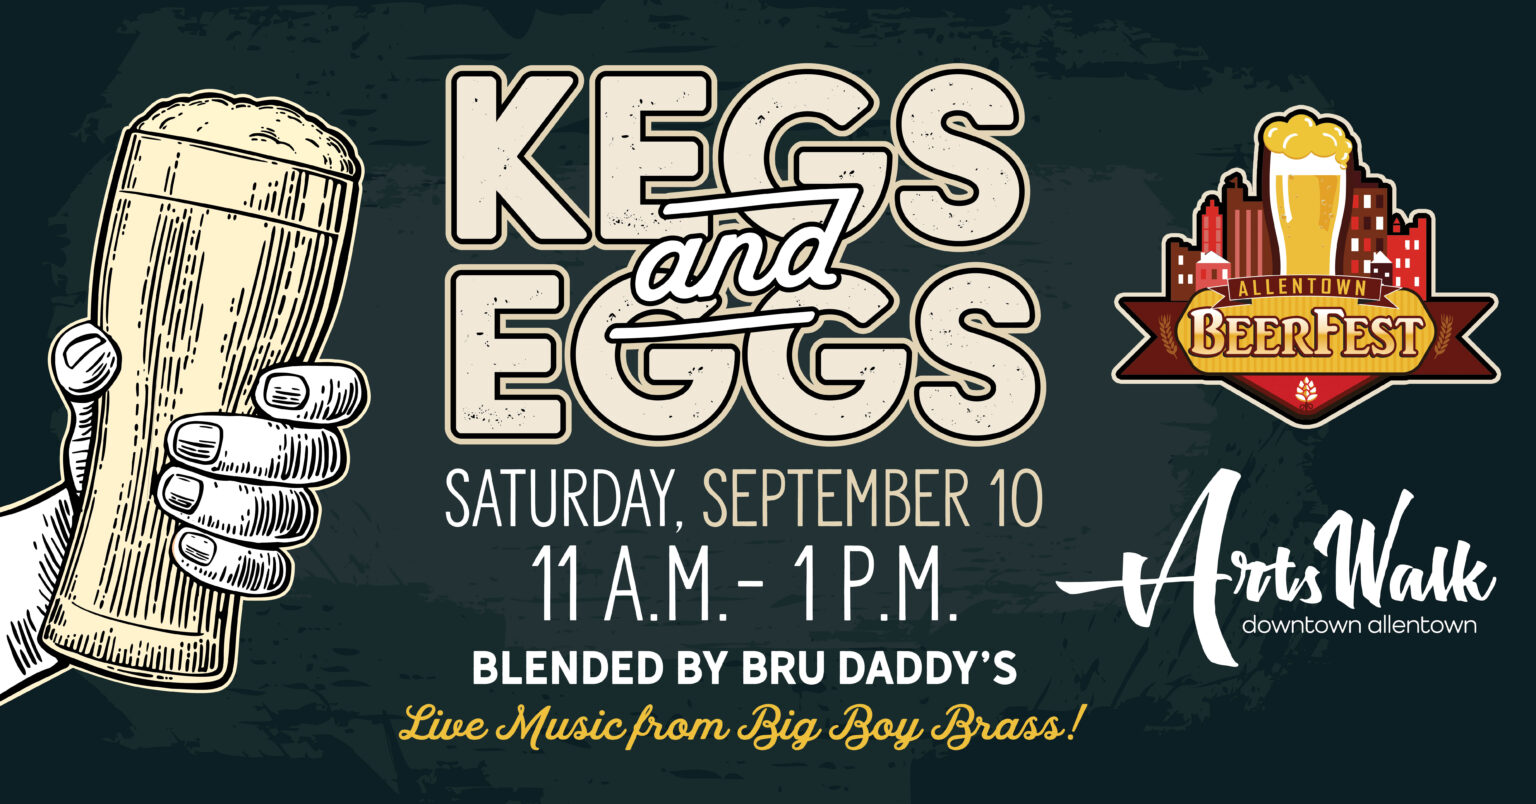 Allentown Beer Fest Kegs & Eggs City Center Residential Blog